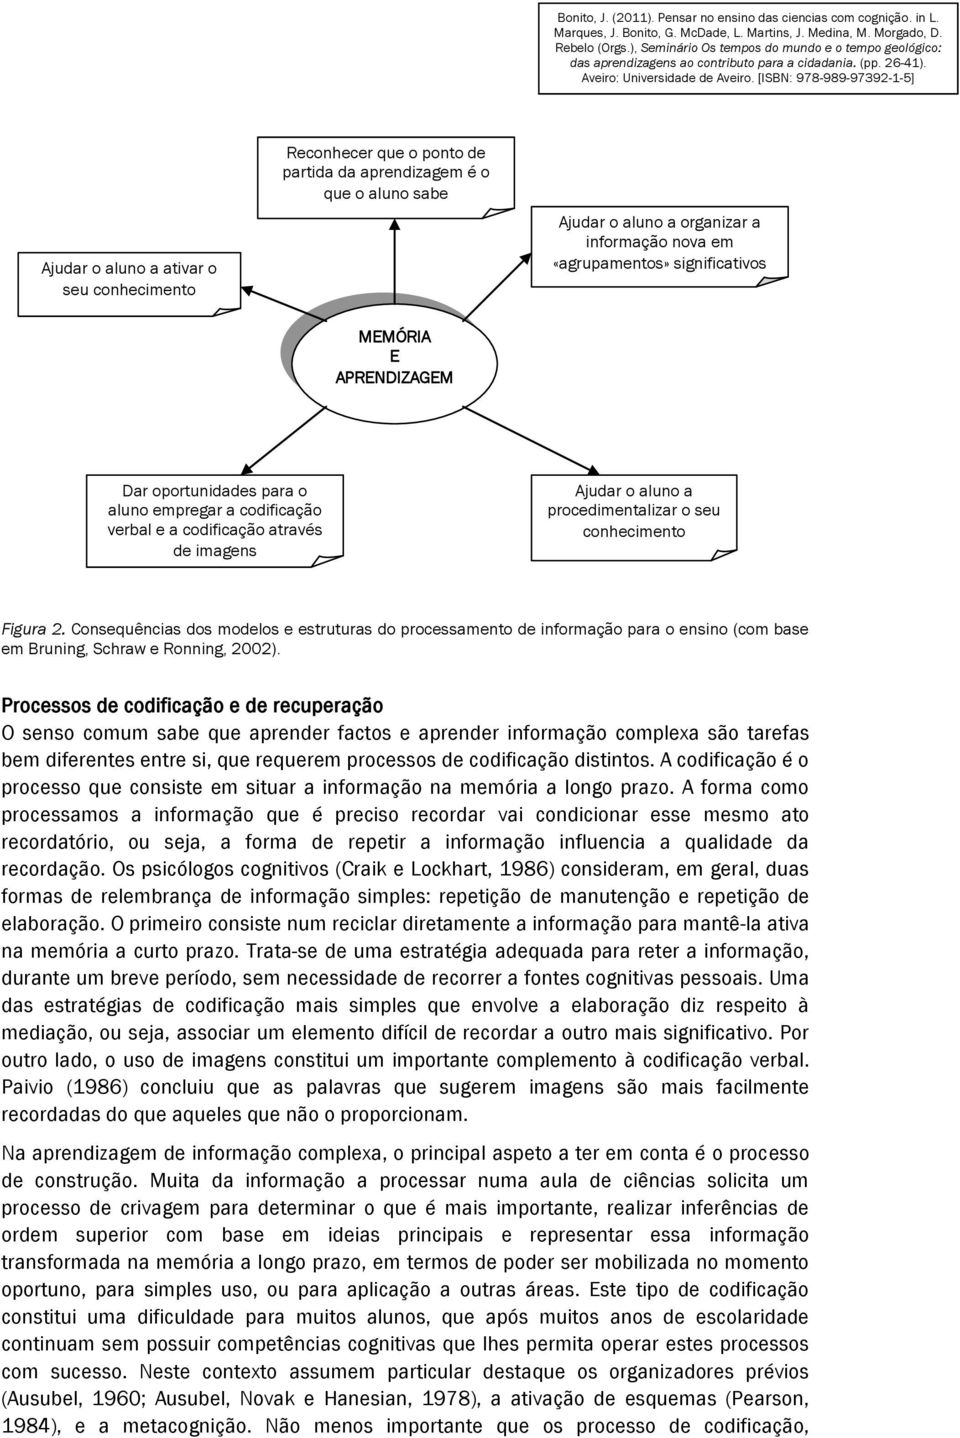 Consequências dos modelos e estruturas do processamento de informação para o ensino (com base em Bruning, Schraw e Ronning, 2002).